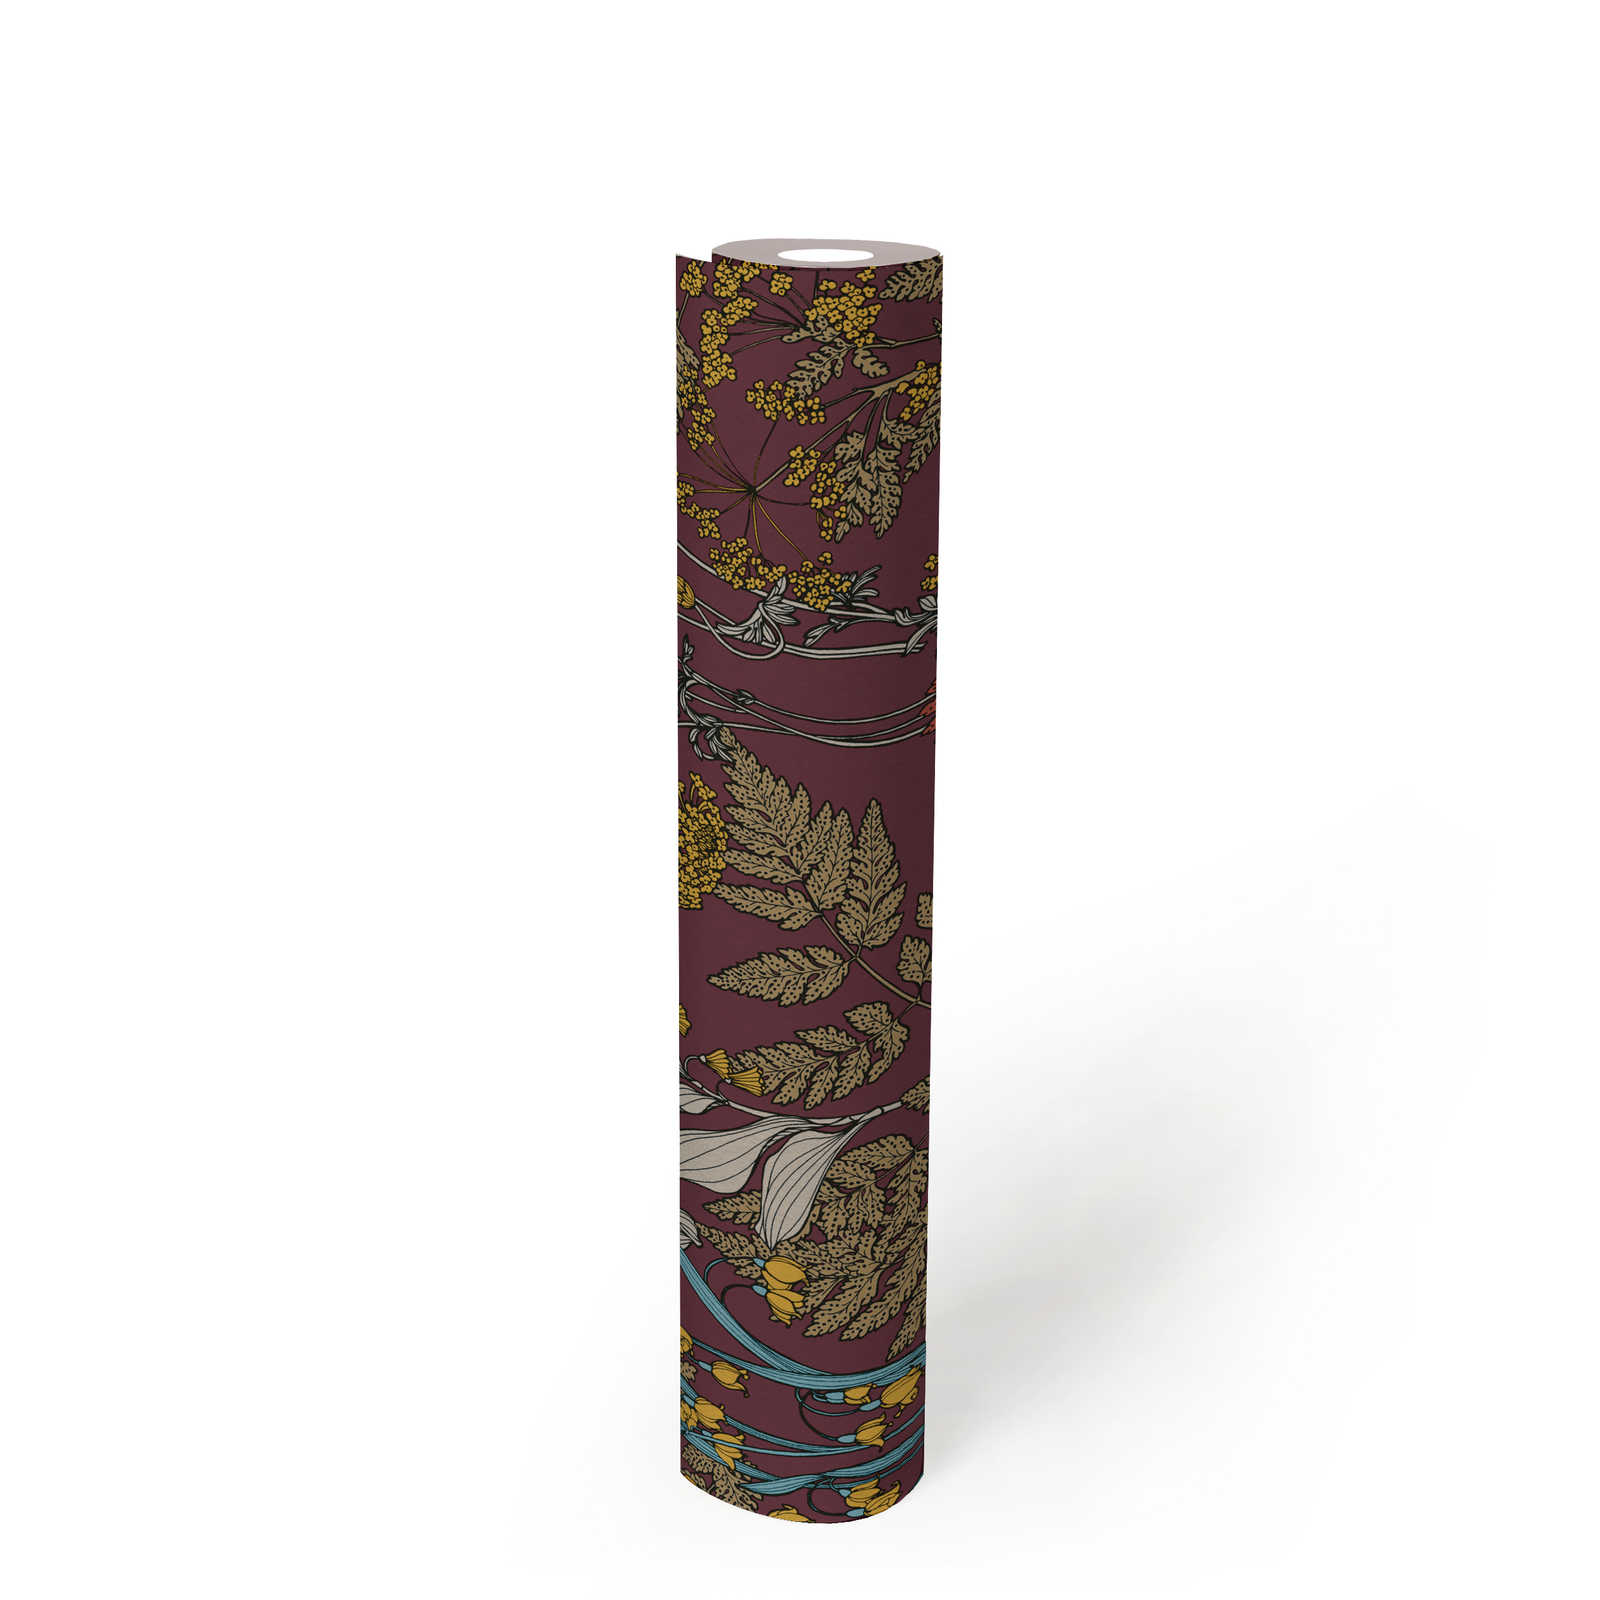             Papier peint violet avec motifs de feuilles et de fleurs colorés - rouge, jaune, bleu
        